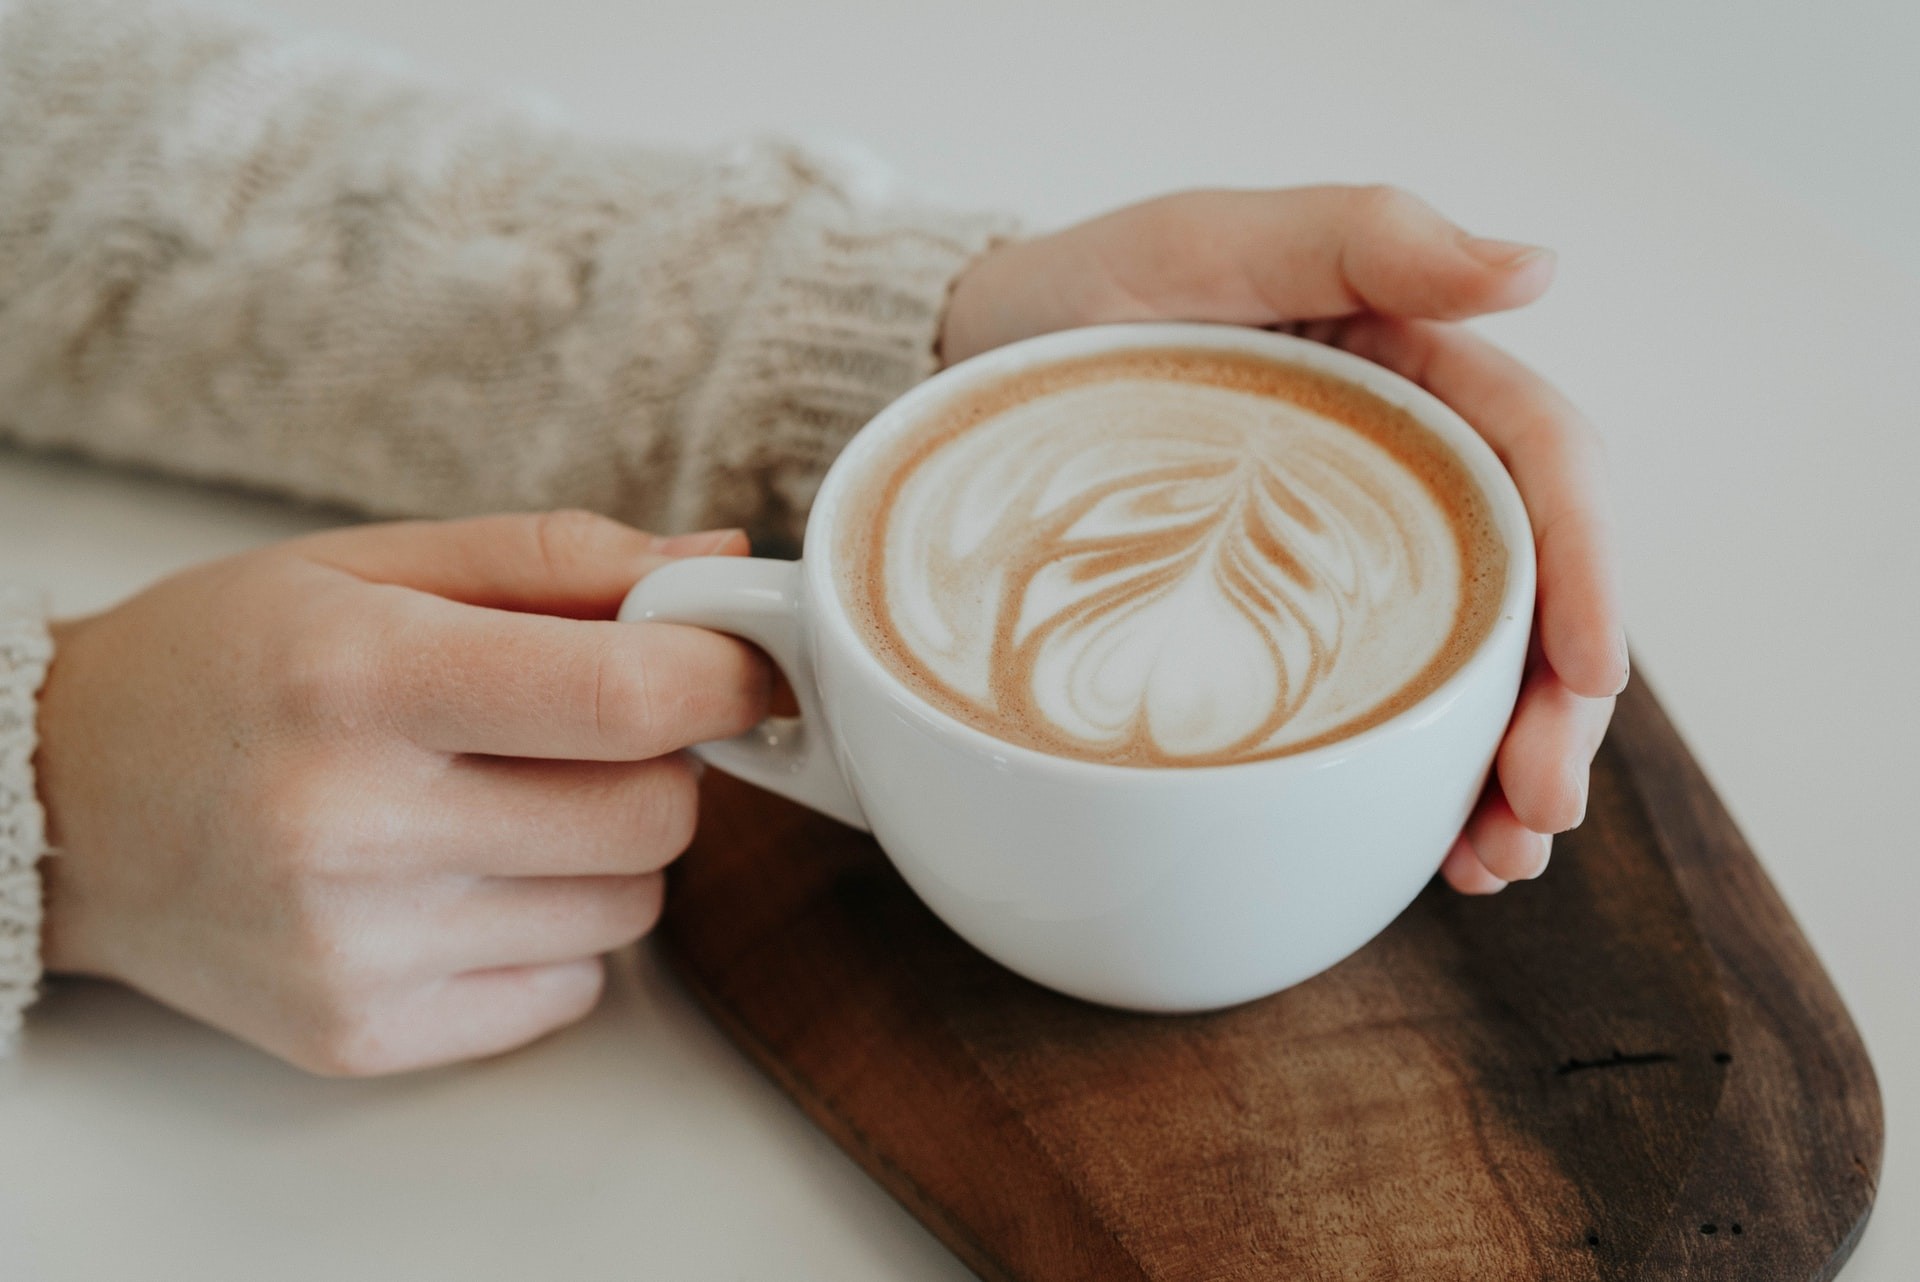 Tomar muito café pode trazer alterações ao cérebro humano, diz estudo  (Foto: Christiana Rivers / Unsplash)